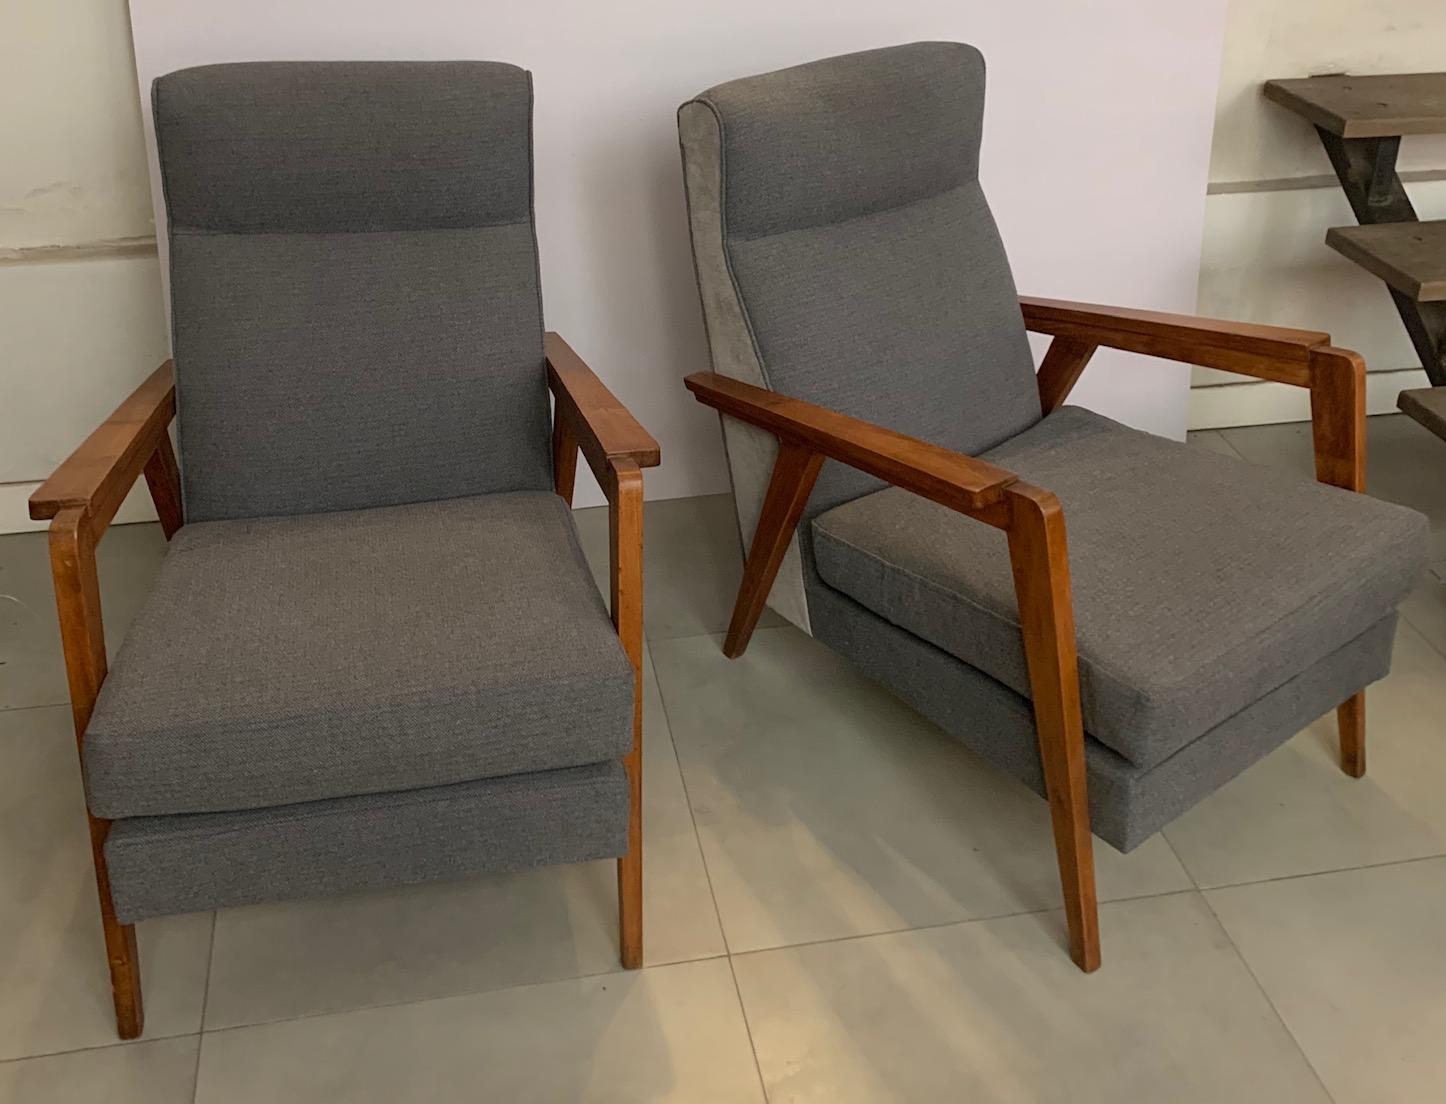 Zwei französische Sessel aus Eichenholz im Design der 1950er Jahre, die mit einem zweifarbigen weißen Wollstoff neu gepolstert worden sind.